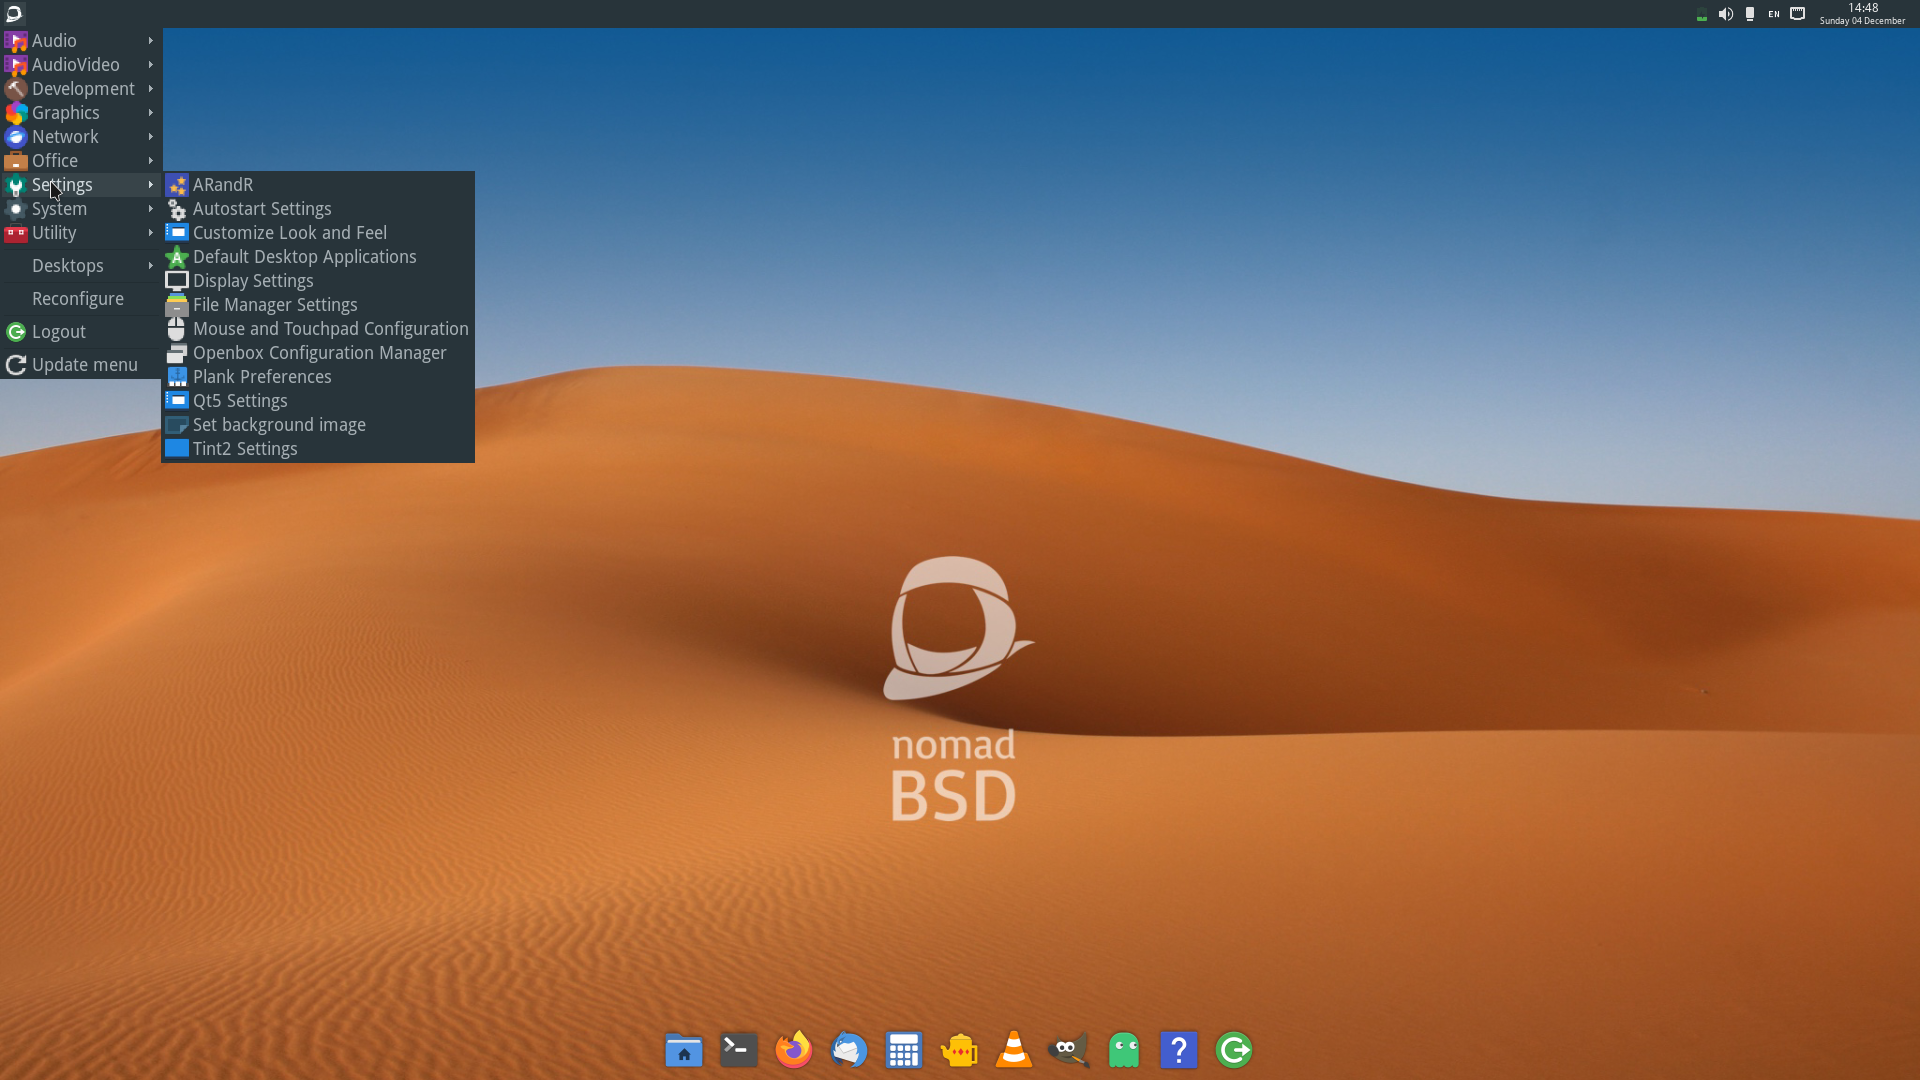 NomadBSD Desktop